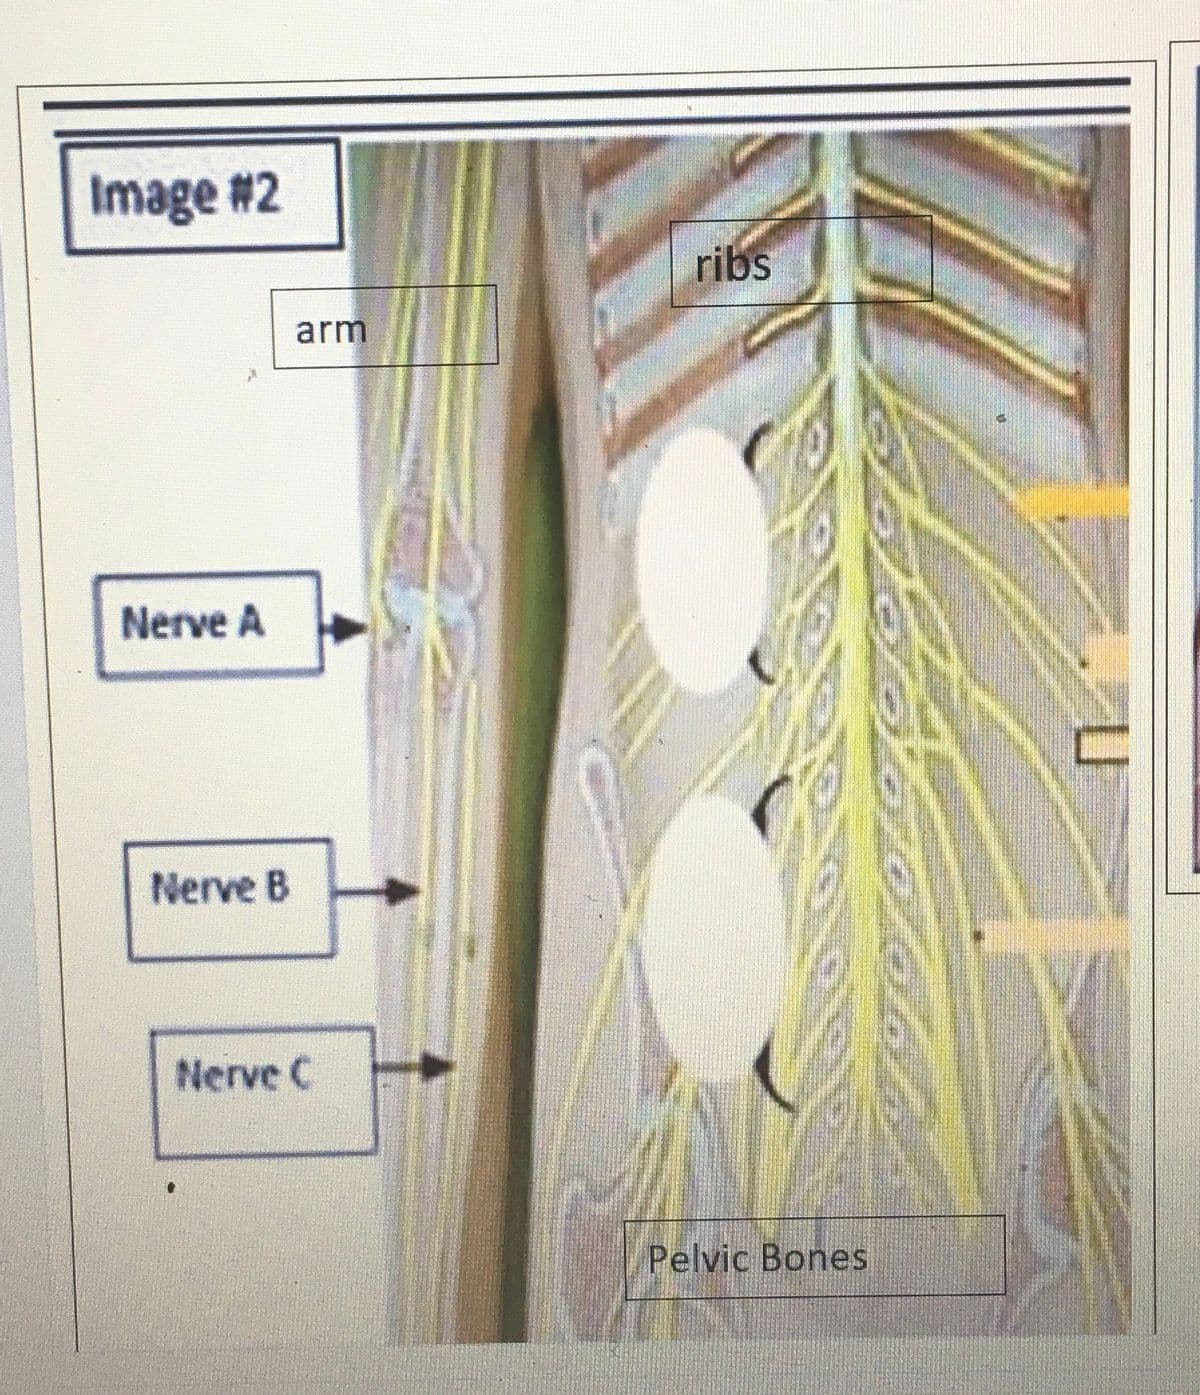 Image #2
Nerve A
Nerve B
arm
Nerve C
ribs
Pelvic Bones
U